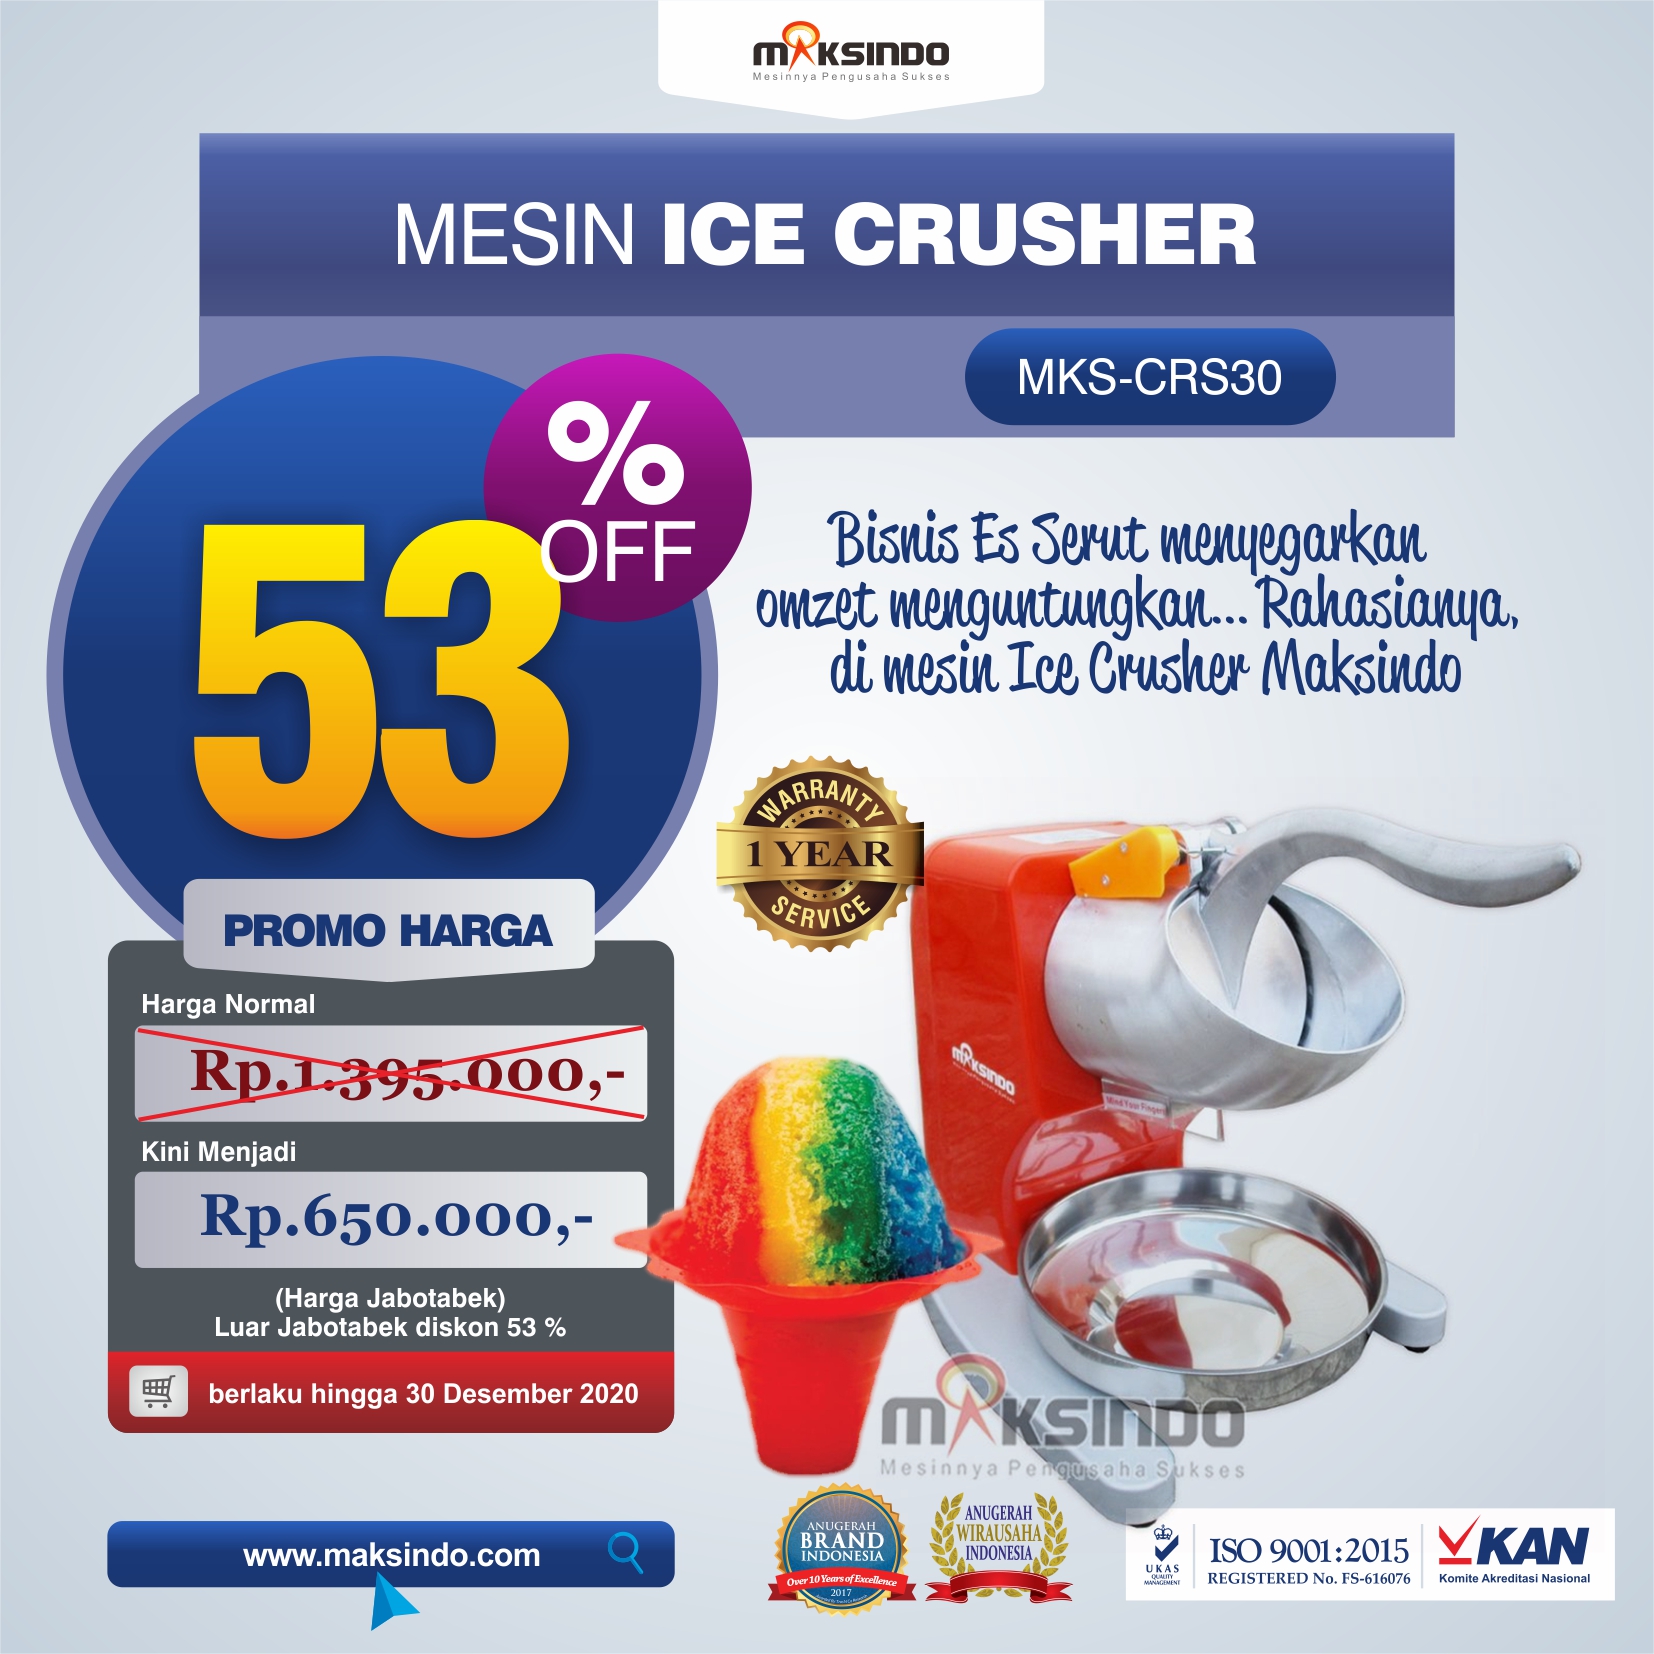 Jual Mesin Ice Crusher MKS-CRS30 di Malang